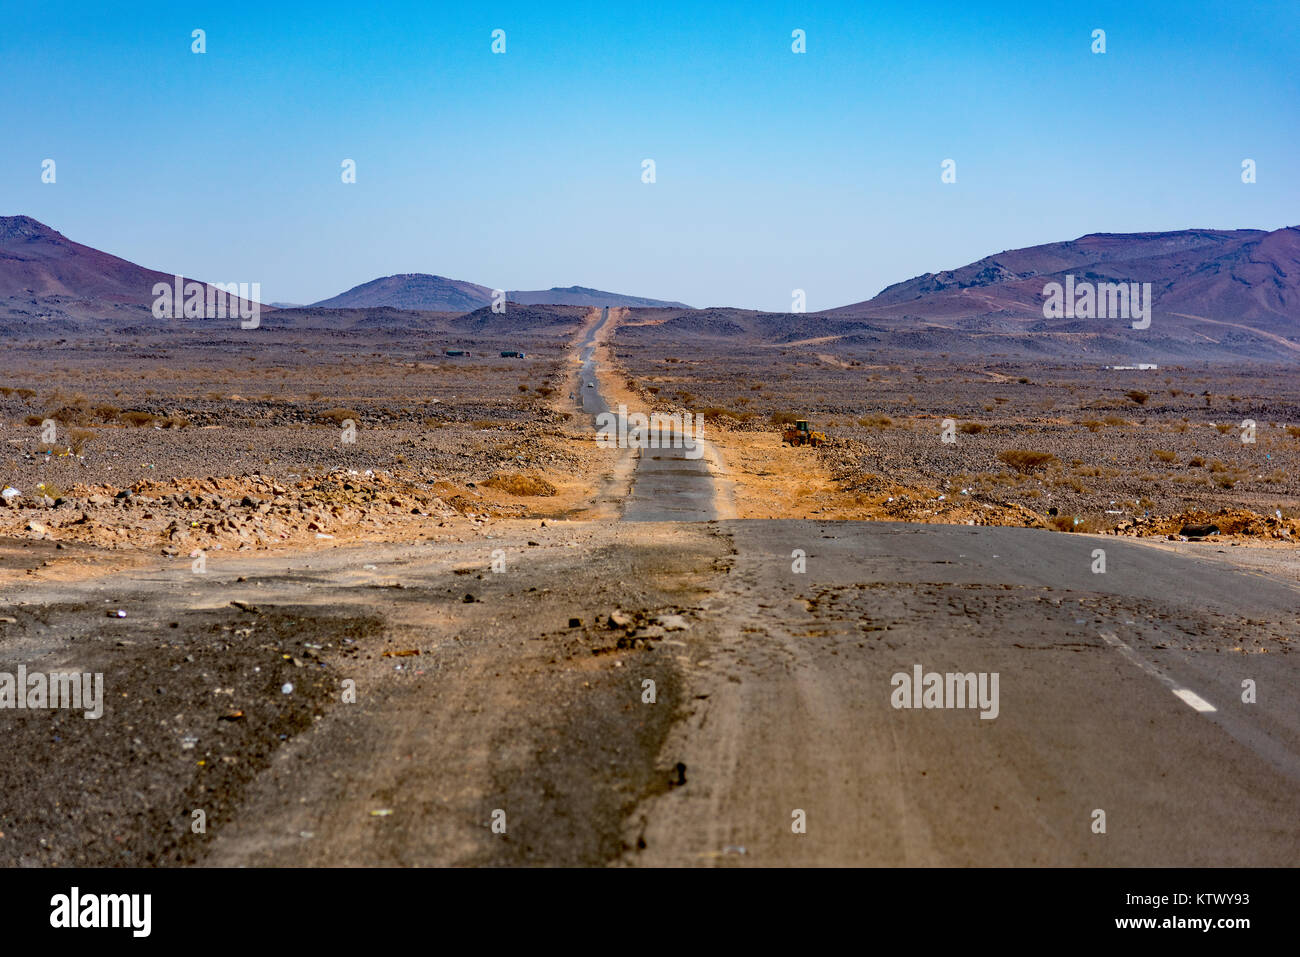 Desierto camino entre minería y Jeddah Madina, provincia de Makkah, Arabia Saudita. Foto de stock